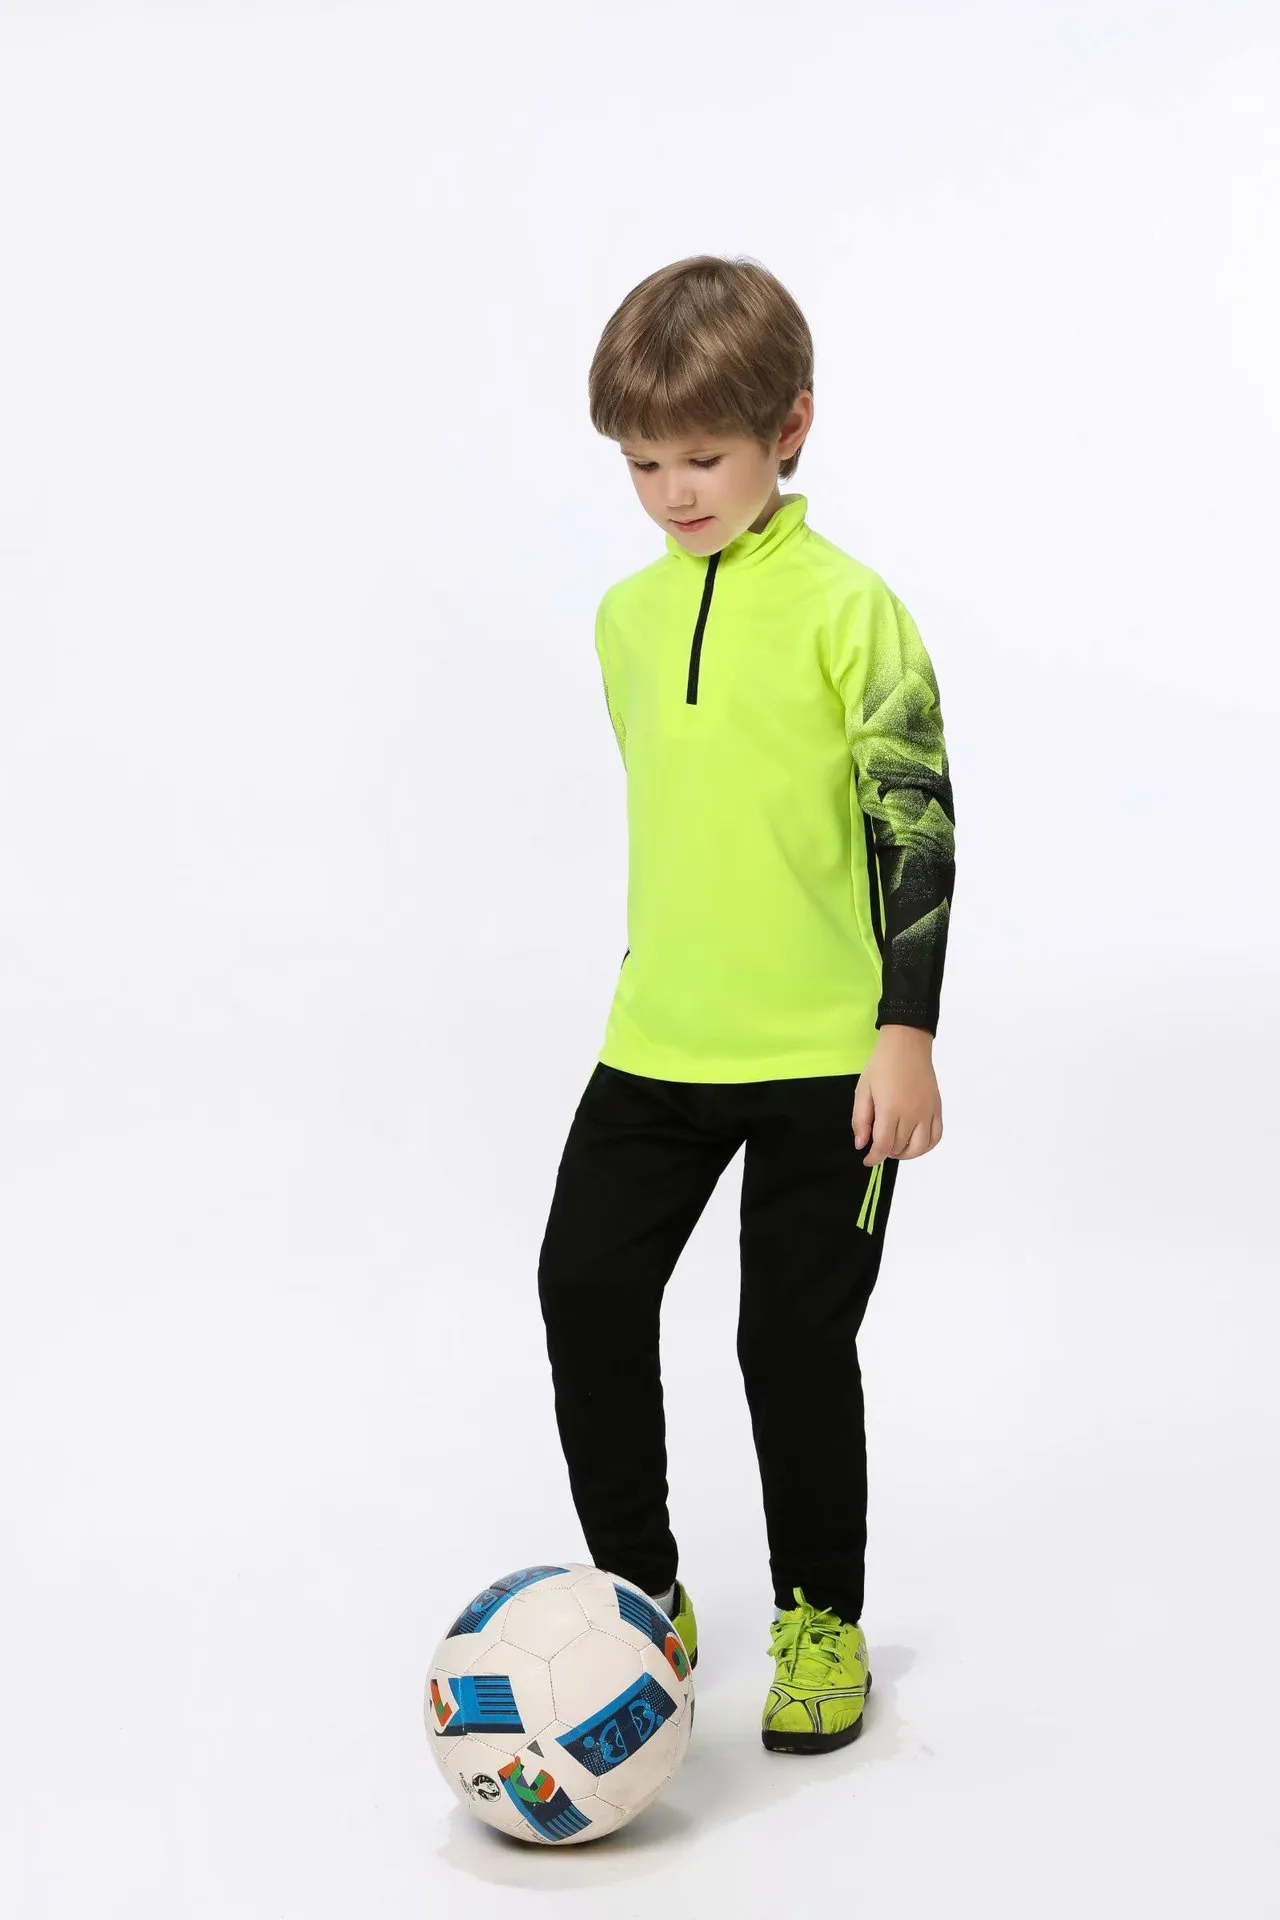 Jessie_kicks #HD61 Oweens Design, модные трикотажные изделия, детская одежда, спортивная поддержка, фотографии контроля качества перед отправкой